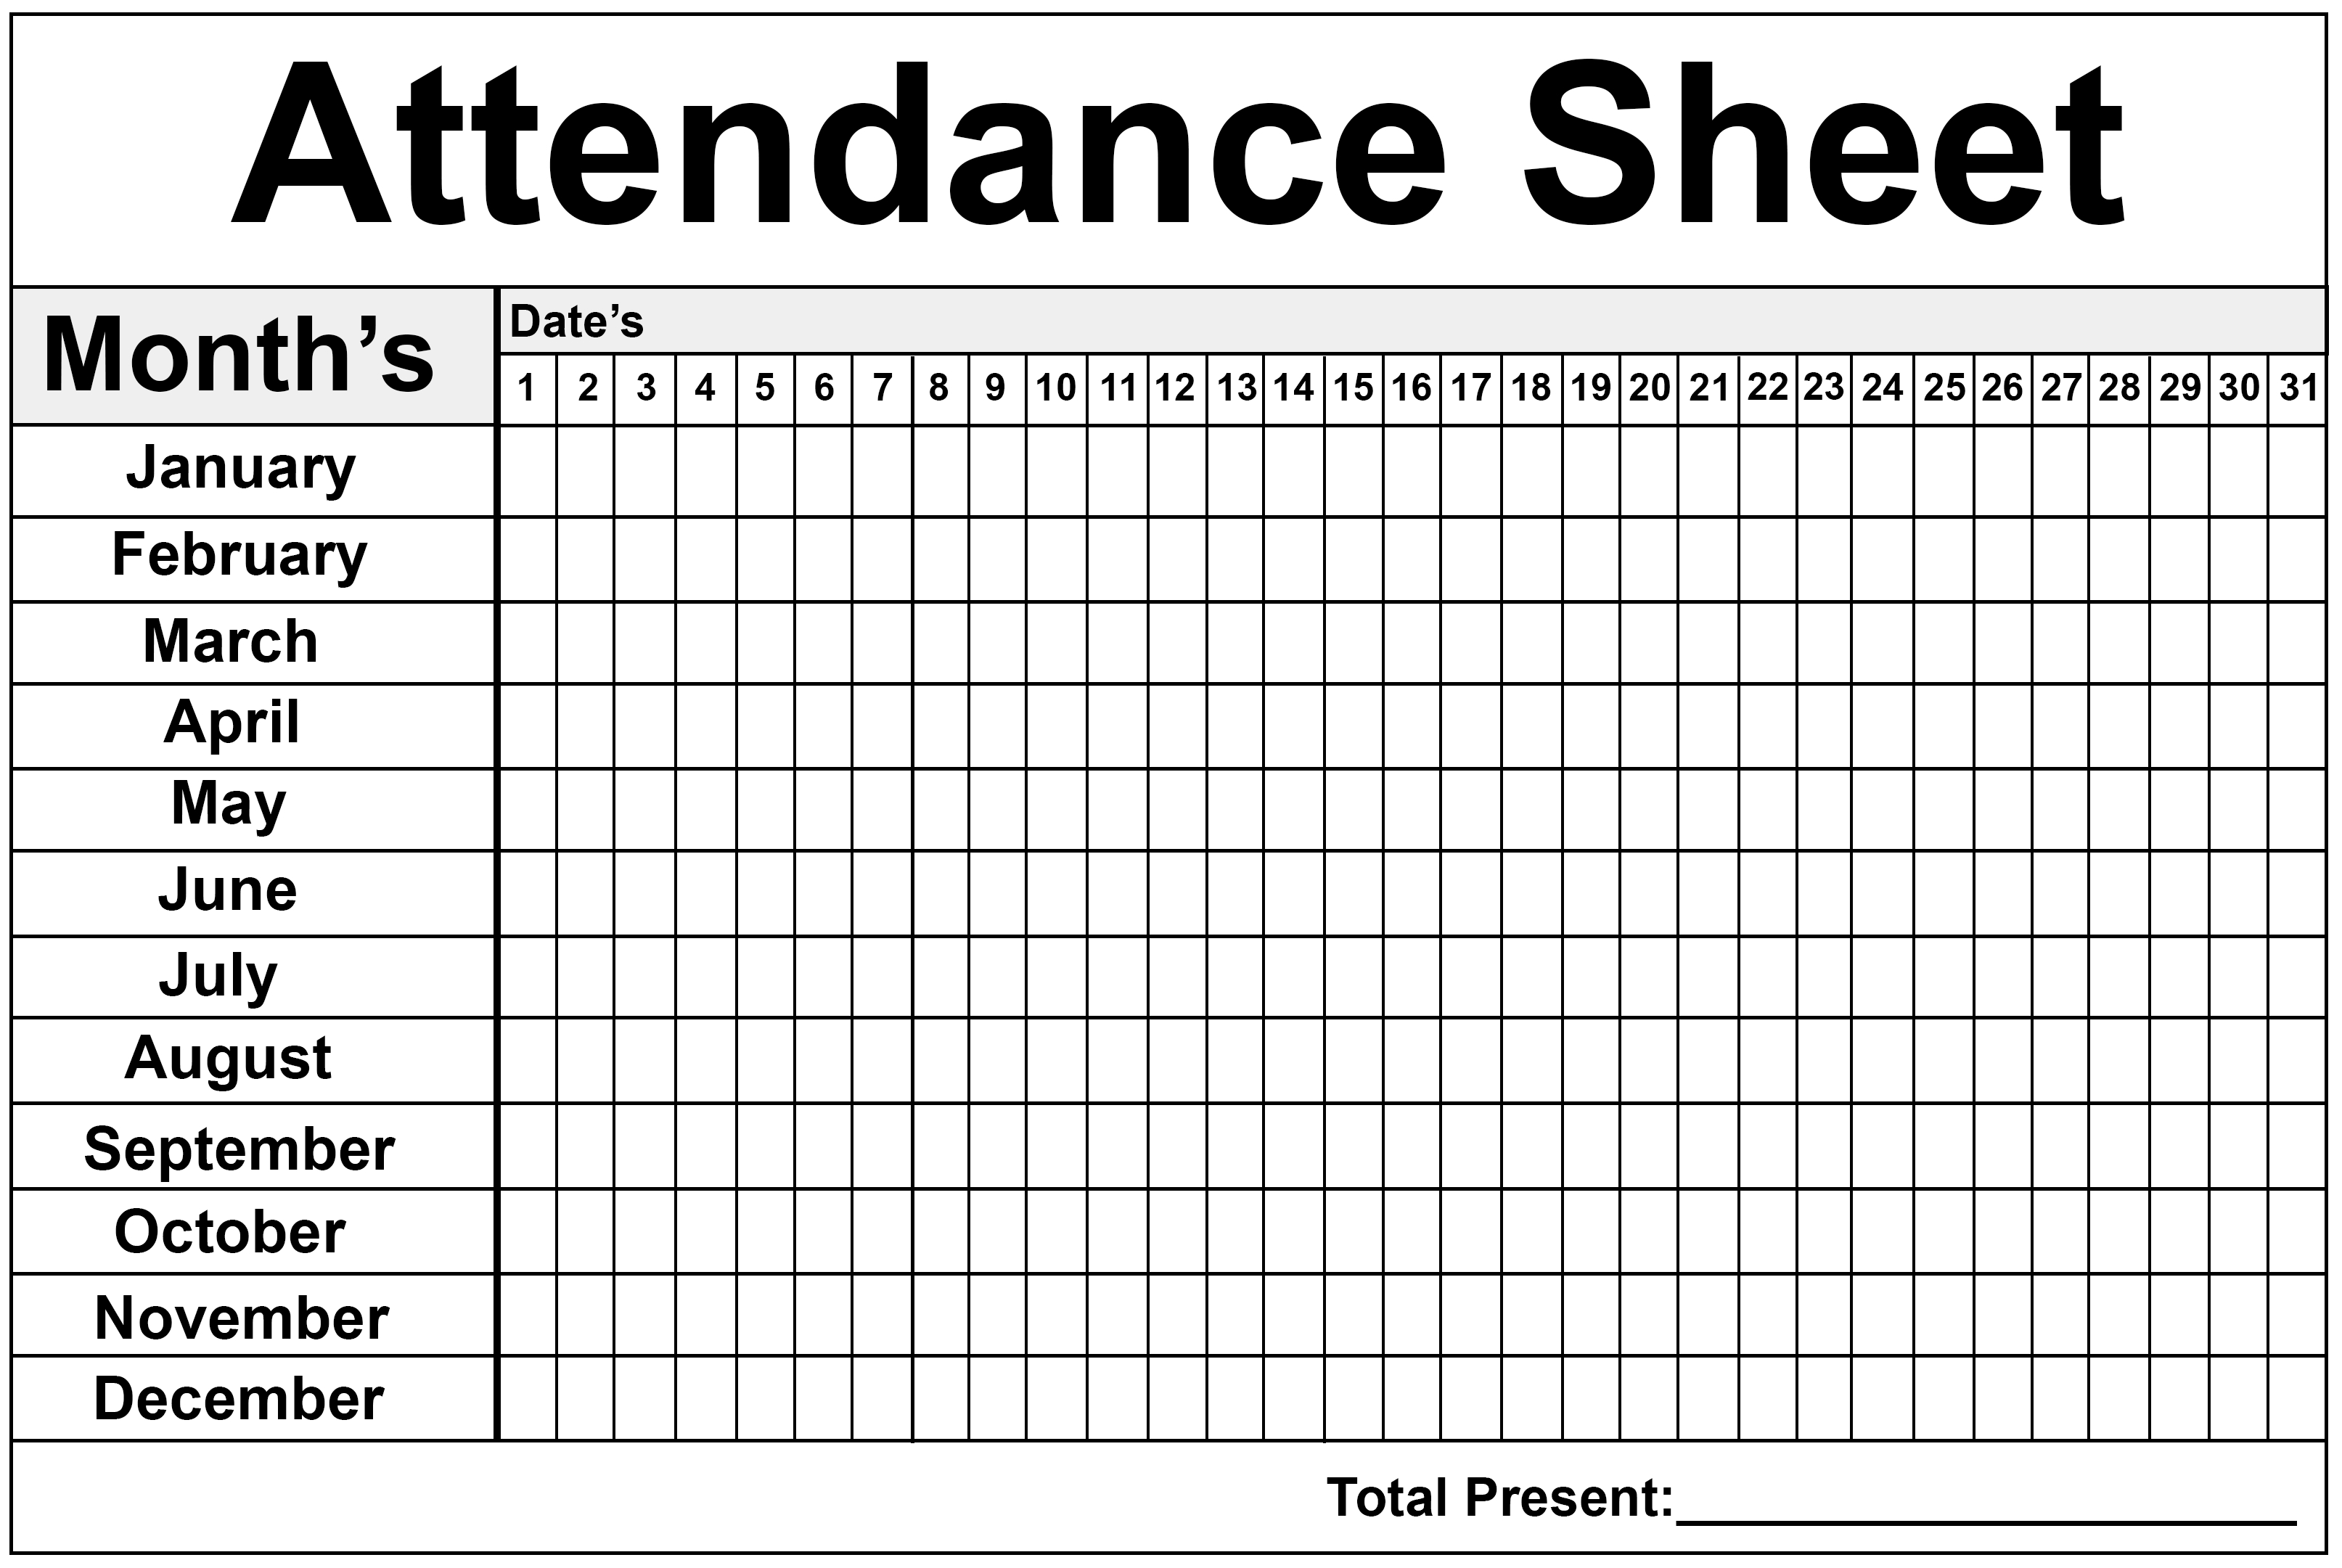 Employee Attendance Tracker Sheet 2019 | Printable Calendar